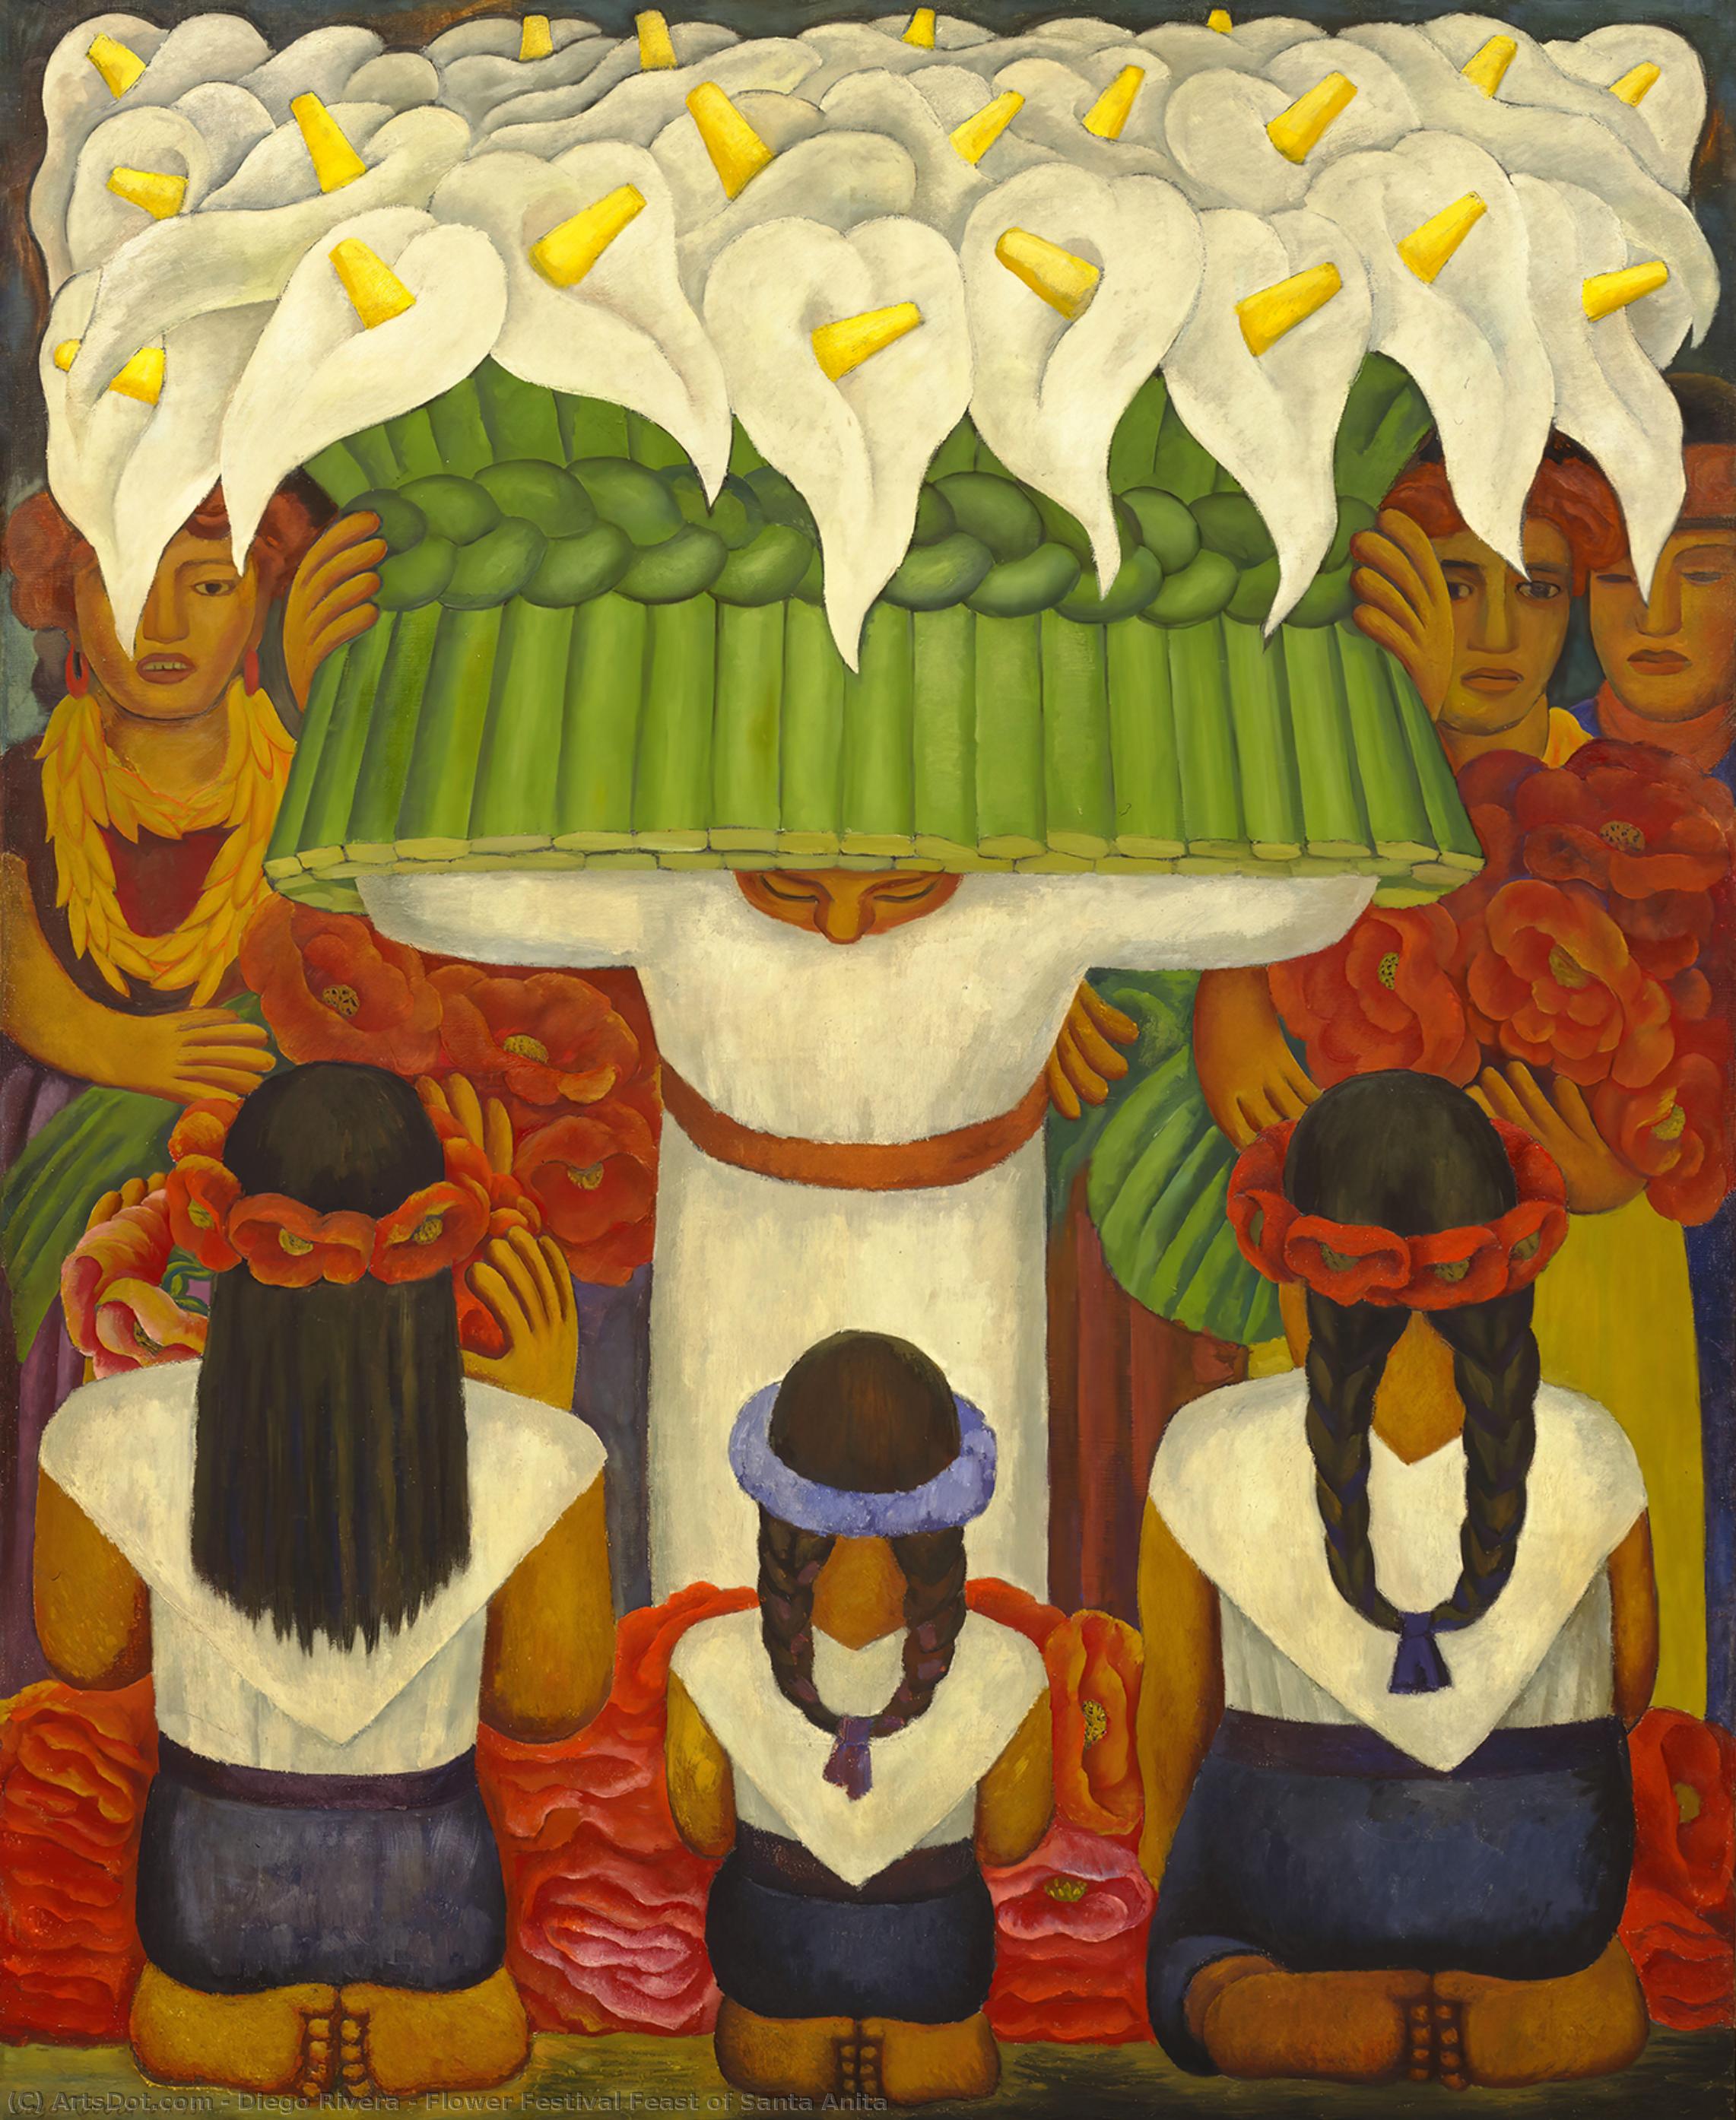 WikiOO.org - Enciclopédia das Belas Artes - Pintura, Arte por Diego Rivera - Flower Festival Feast of Santa Anita